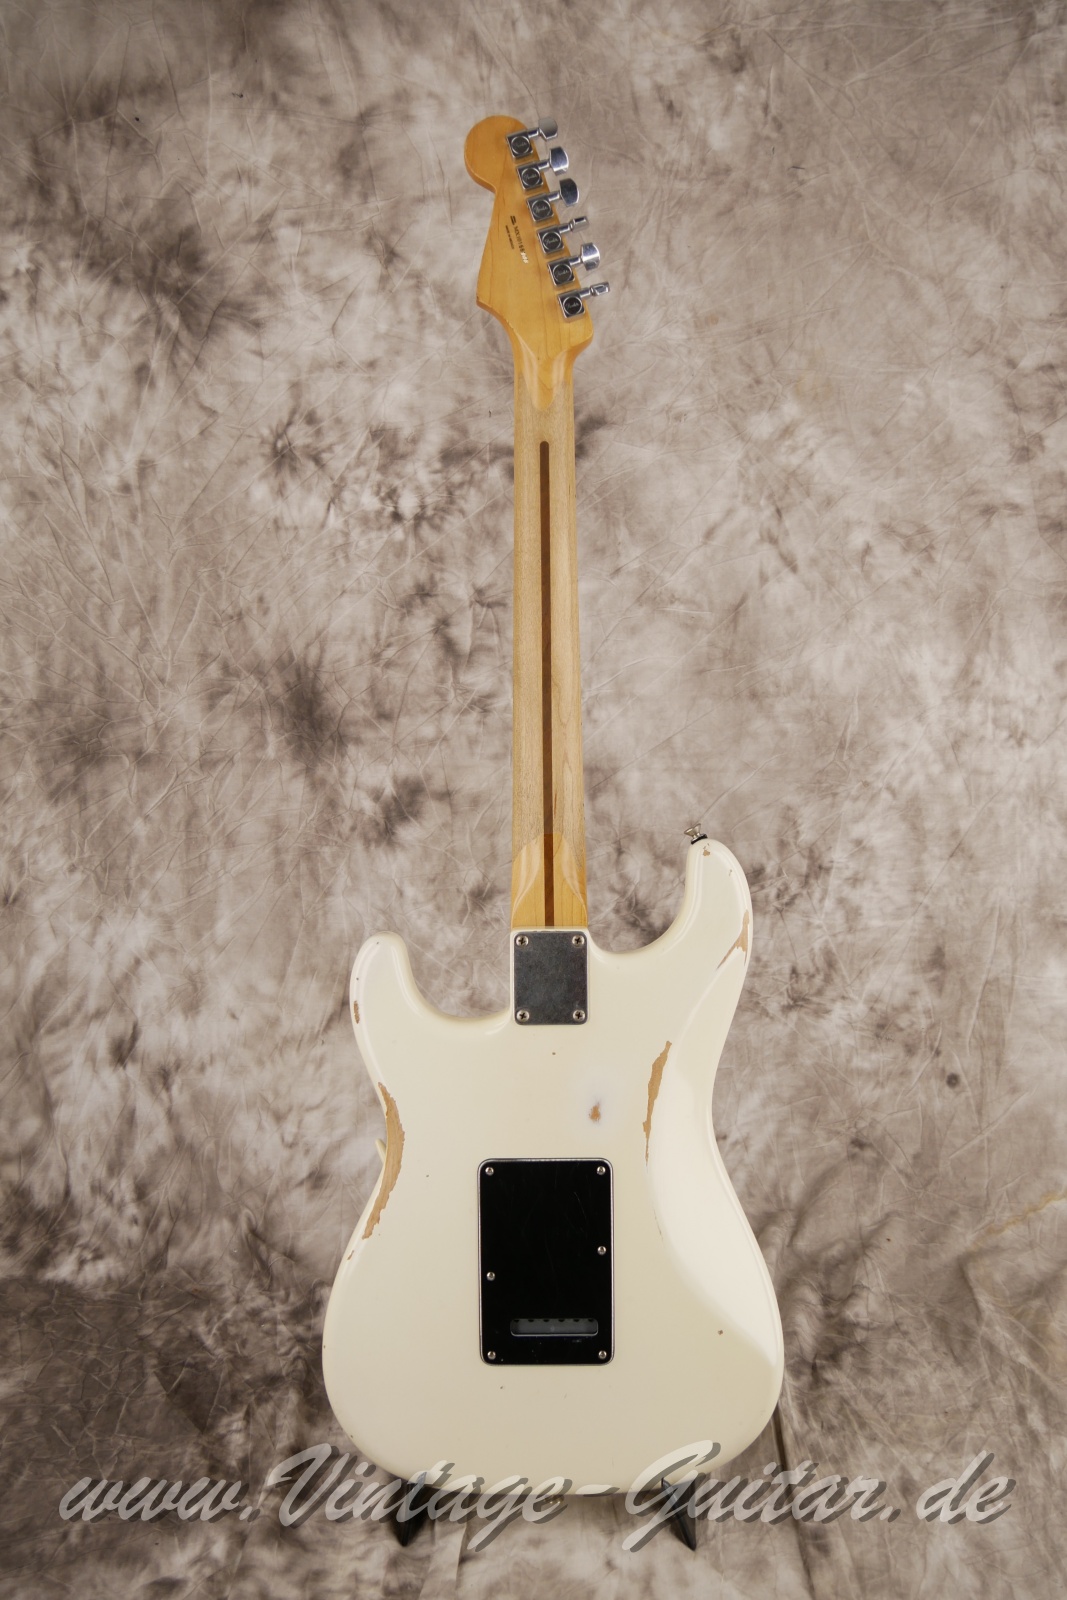 img/vintage/5656/Fender-Stratocaster-roadworn-player-series-60s-reissue-2011-olympic-white-002.jpg